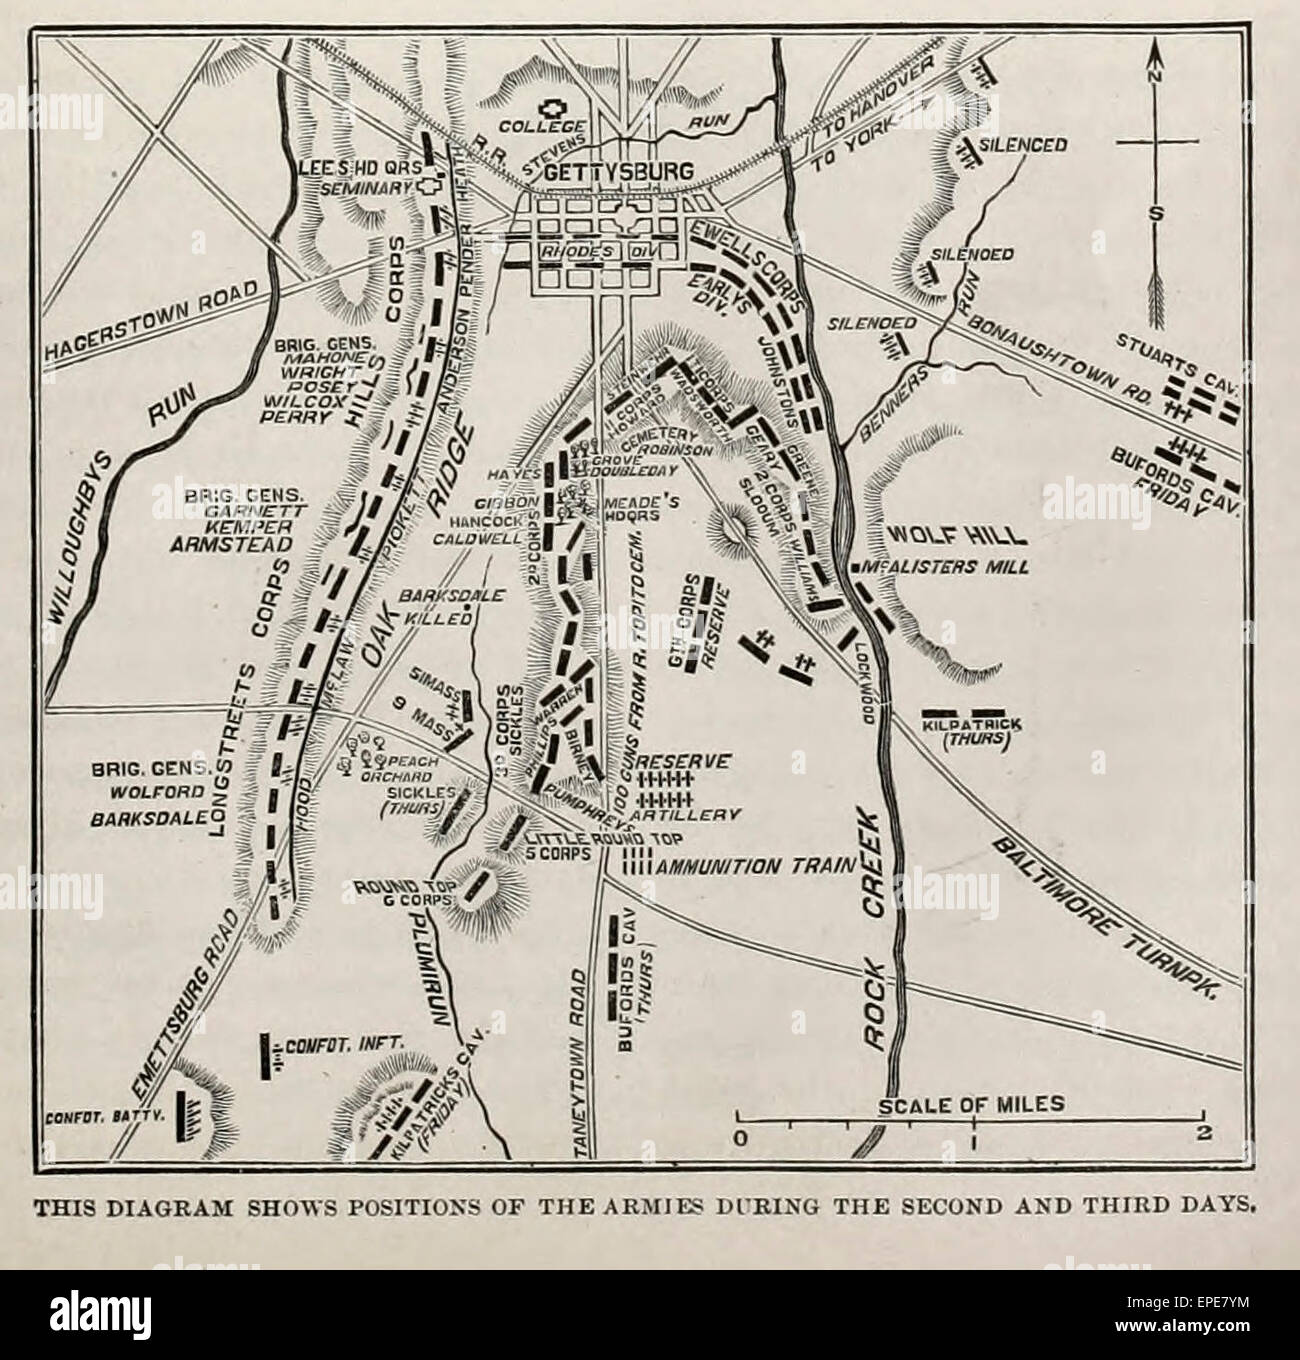 Ce diagramme montre les positions des armées pendant les deuxième et troisième jours durant la bataille de Gettysburg en France la guerre civile, Juillet 1863 Banque D'Images